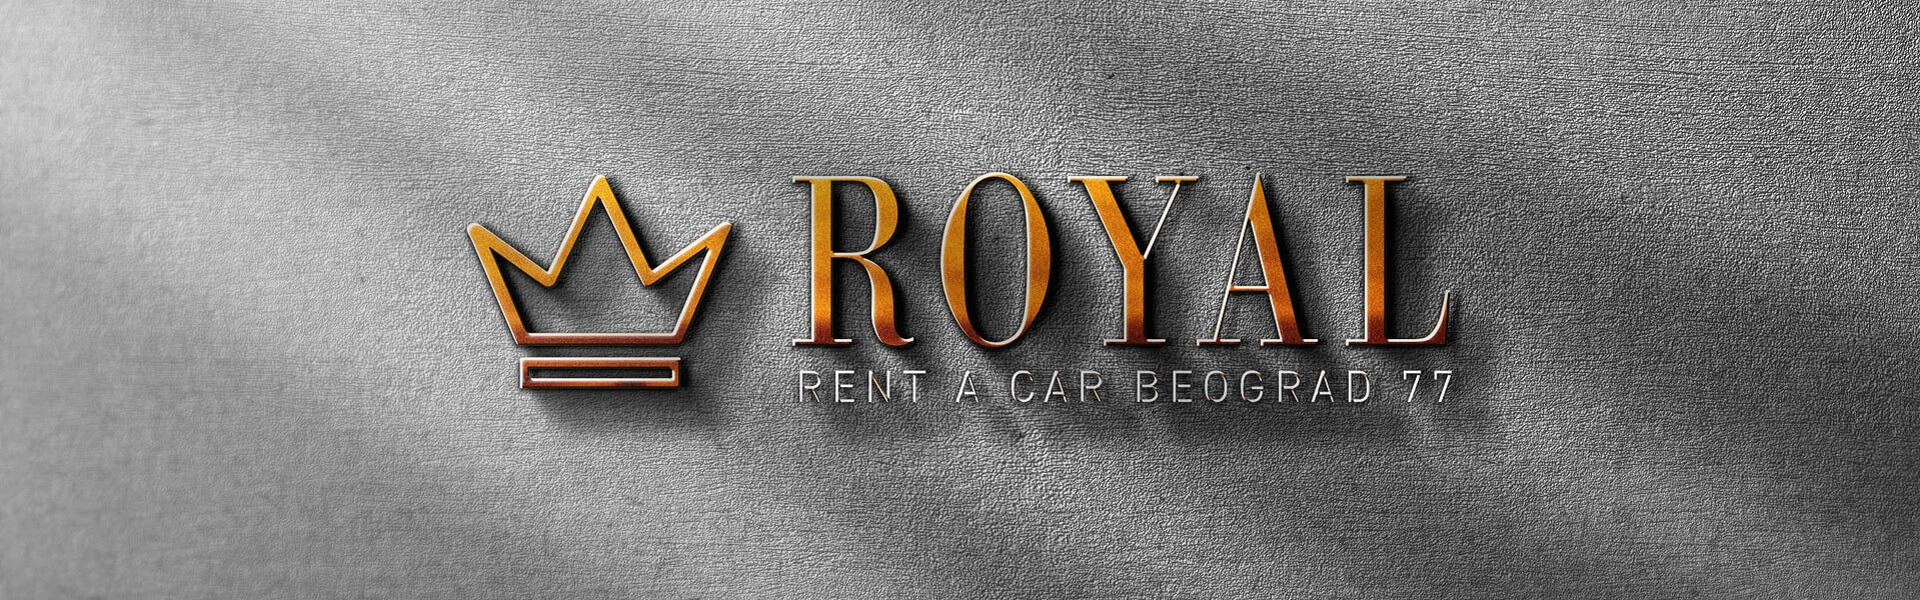 FIAT delovi | Rent a car Beograd Royal